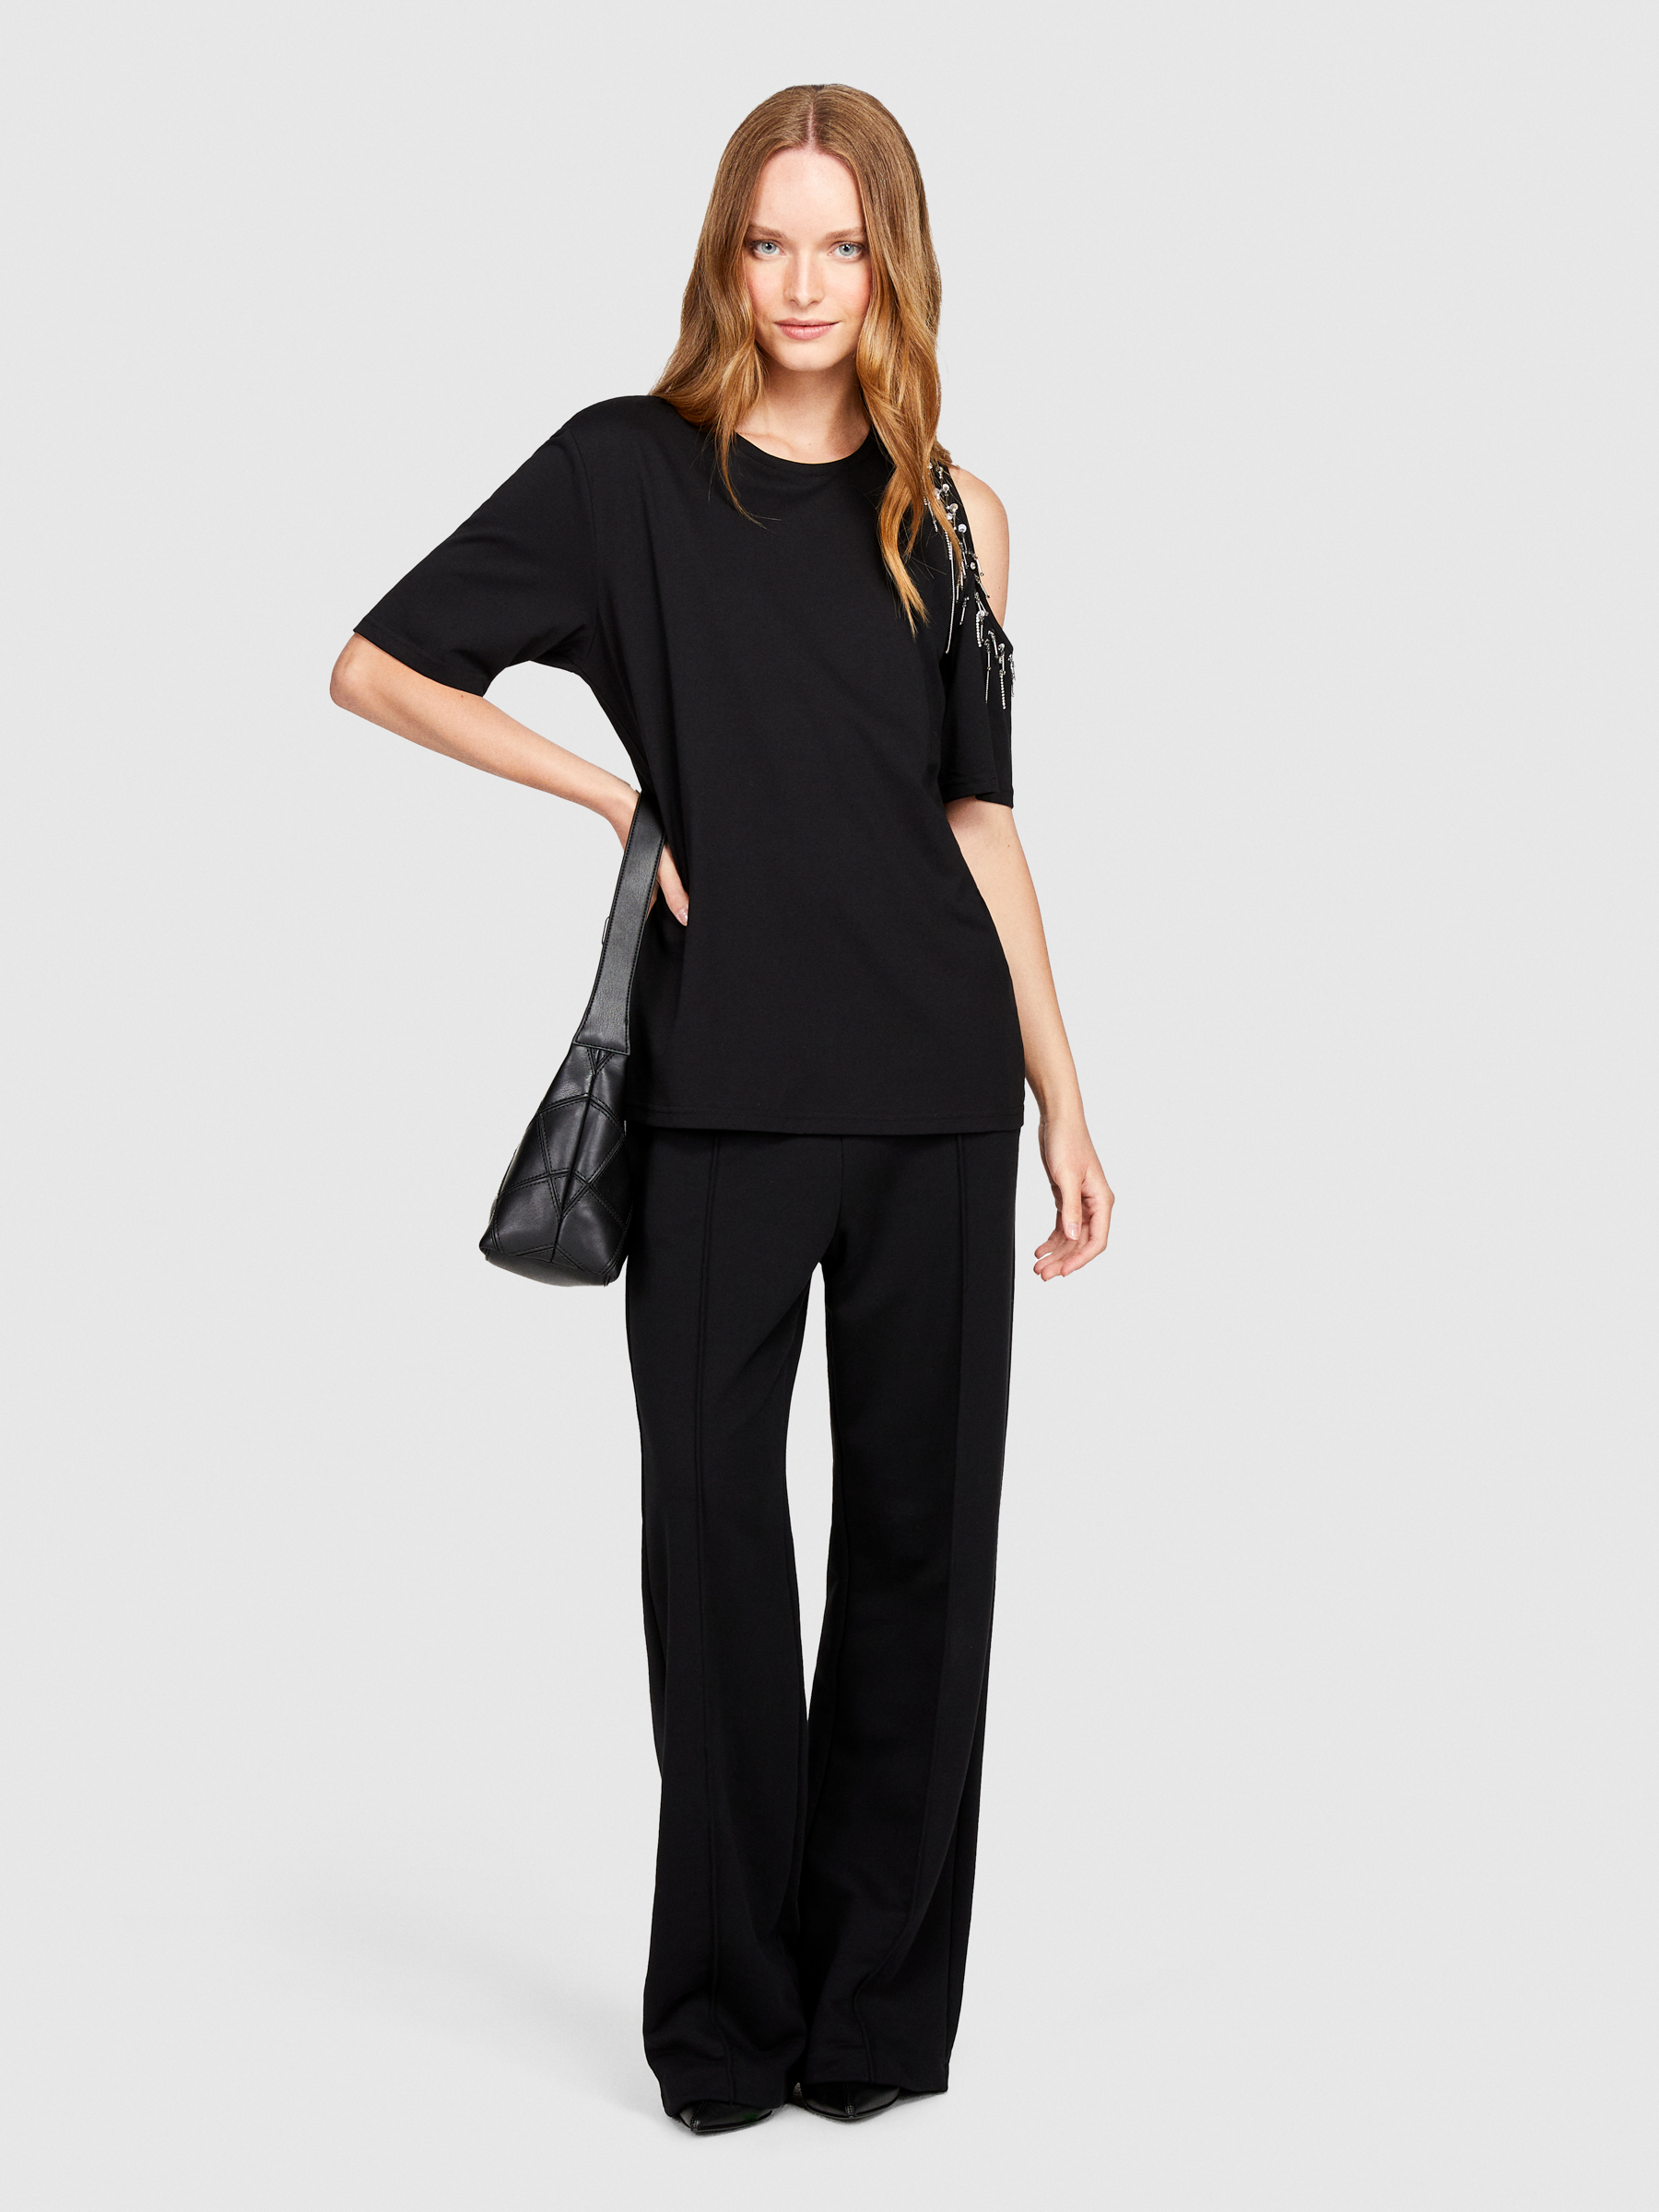 Sisley - T-shirt With Porthole, Woman, Black, Size: S